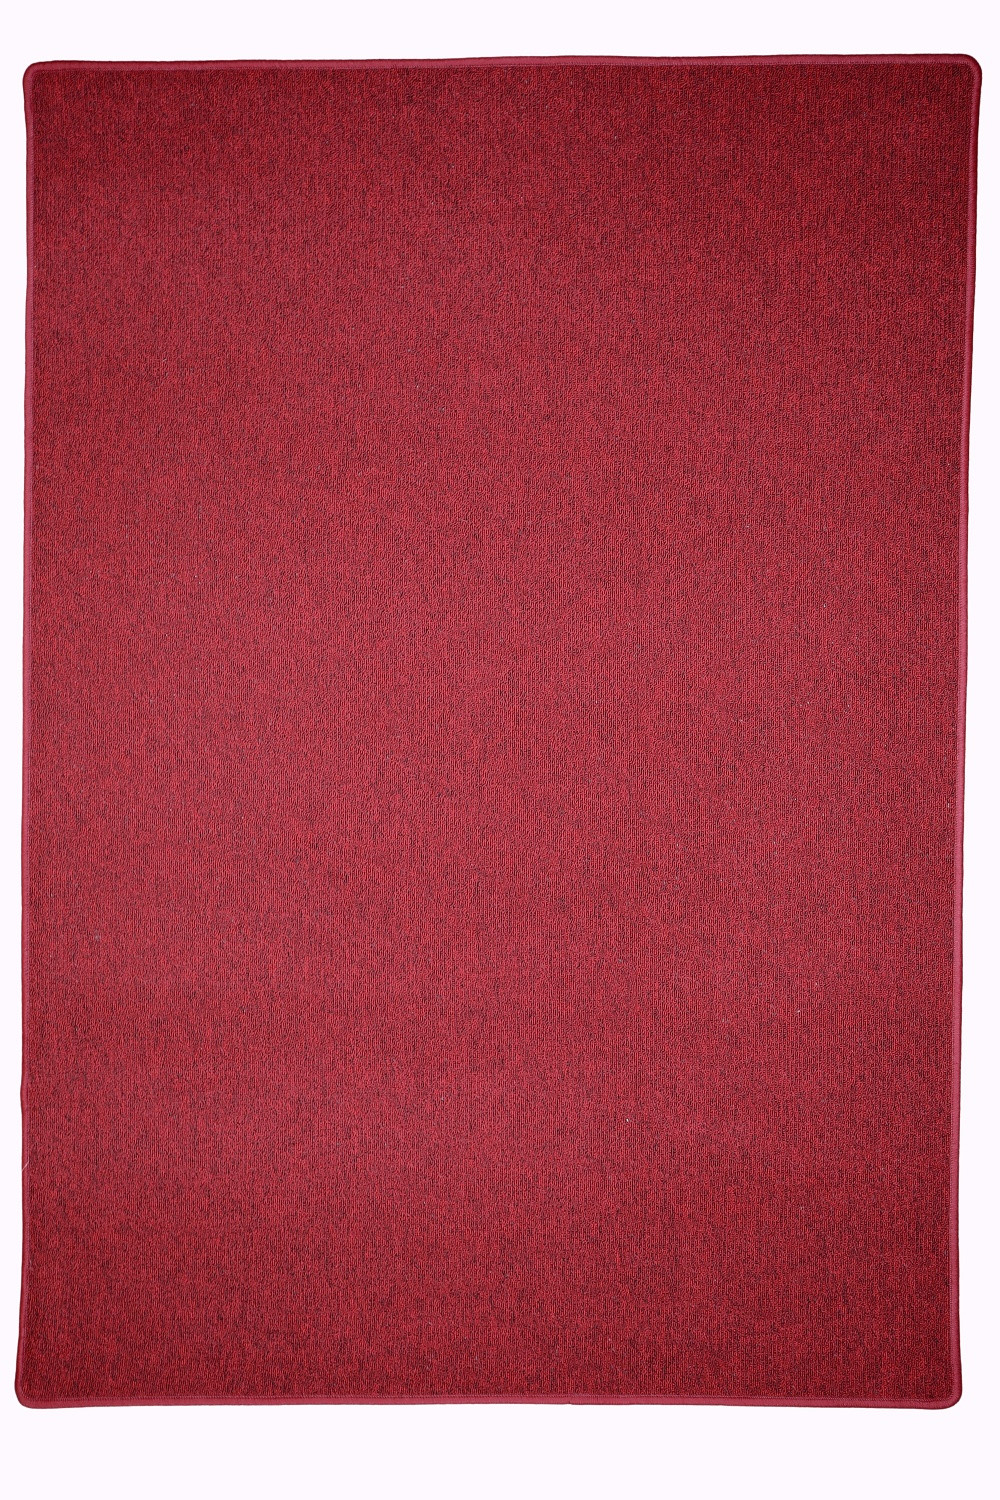 Kusový koberec Astra červená - 57x120 cm Vopi koberce 